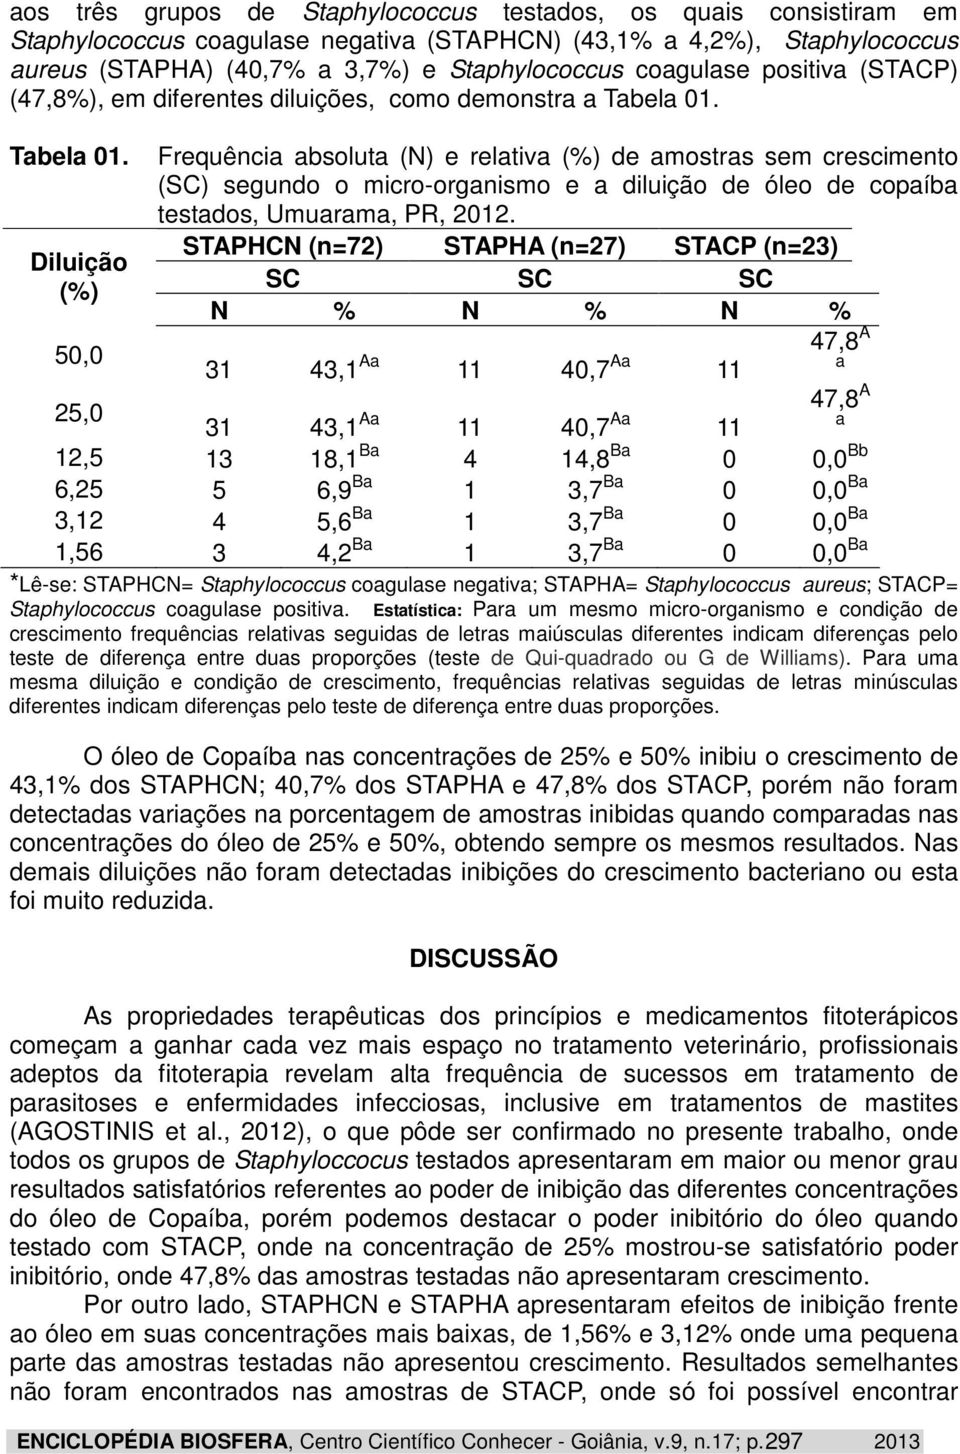 Tabela 01. Diluição (%) Frequência absoluta (N) e relativa (%) de amostras sem crescimento (SC) segundo o micro-organismo e a diluição de óleo de copaíba testados, Umuarama, PR, 2012.